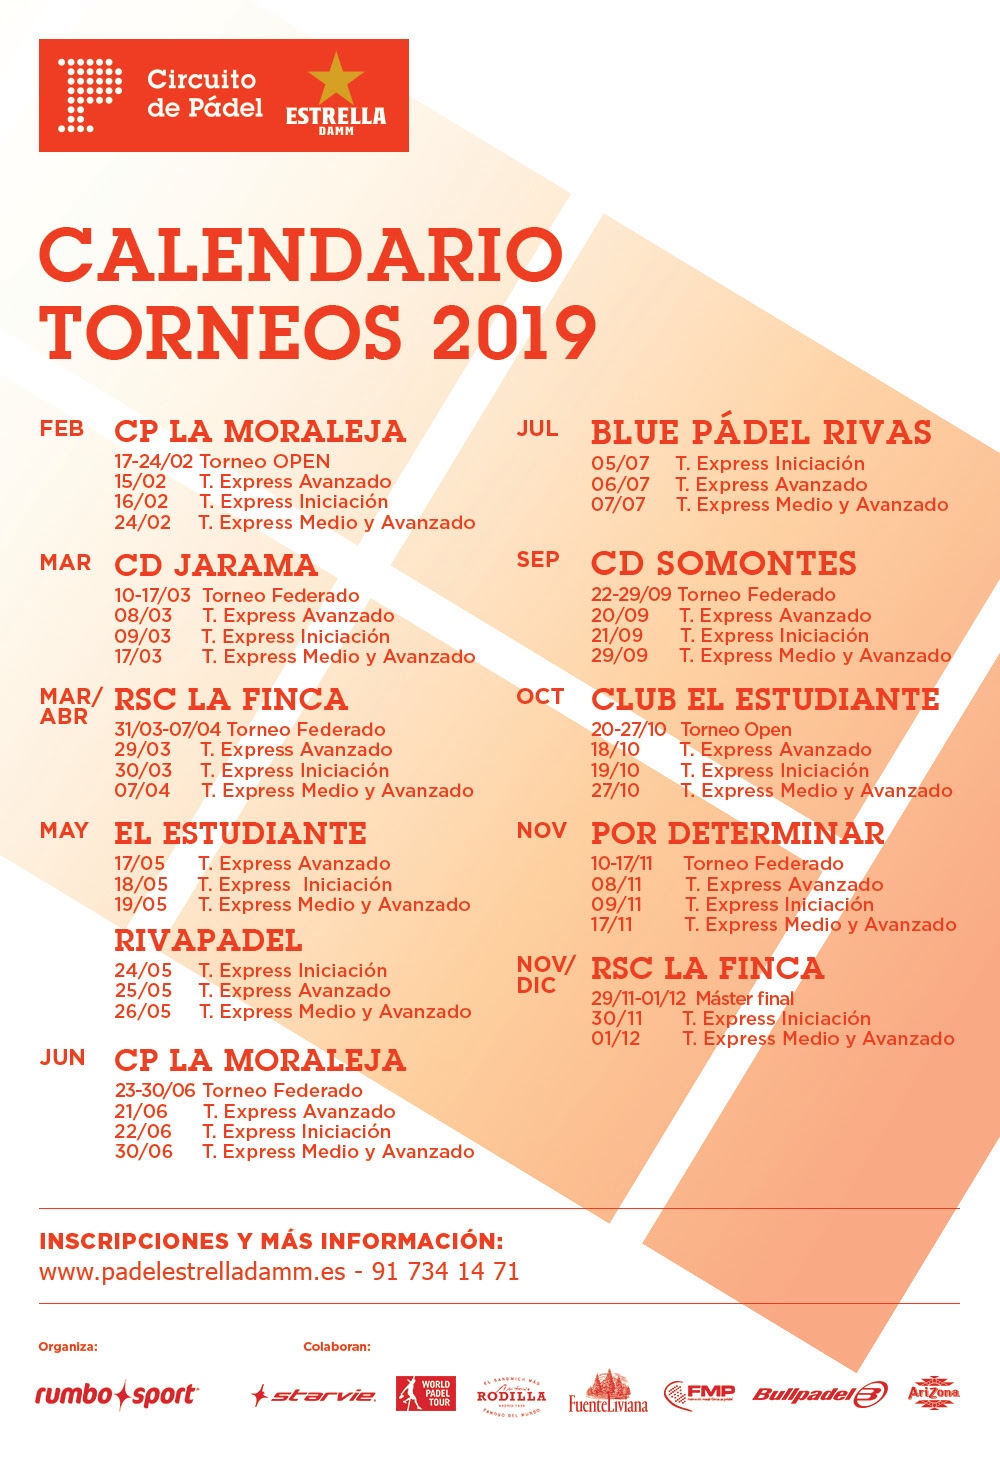 Circuito Pdel Estrella Damm Temporada 2019 calendario